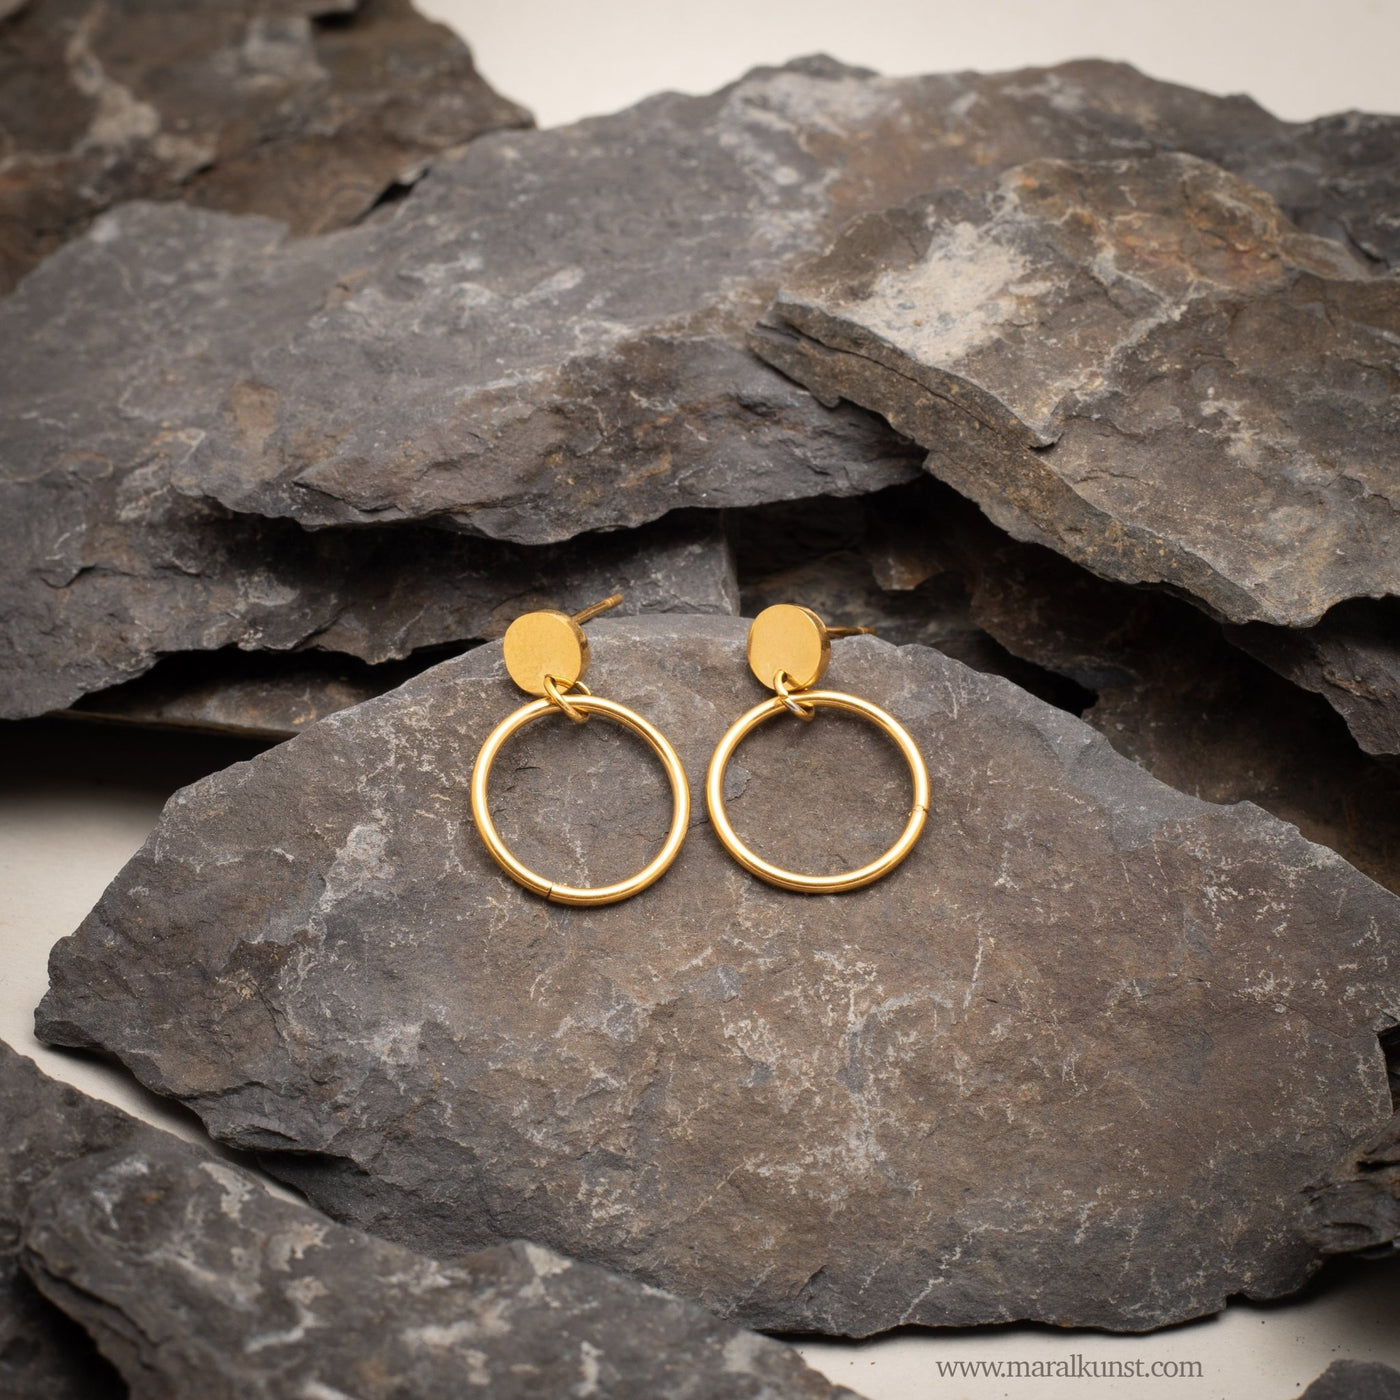 Hanna Gold Earrings - Maral Kunst Jewelry